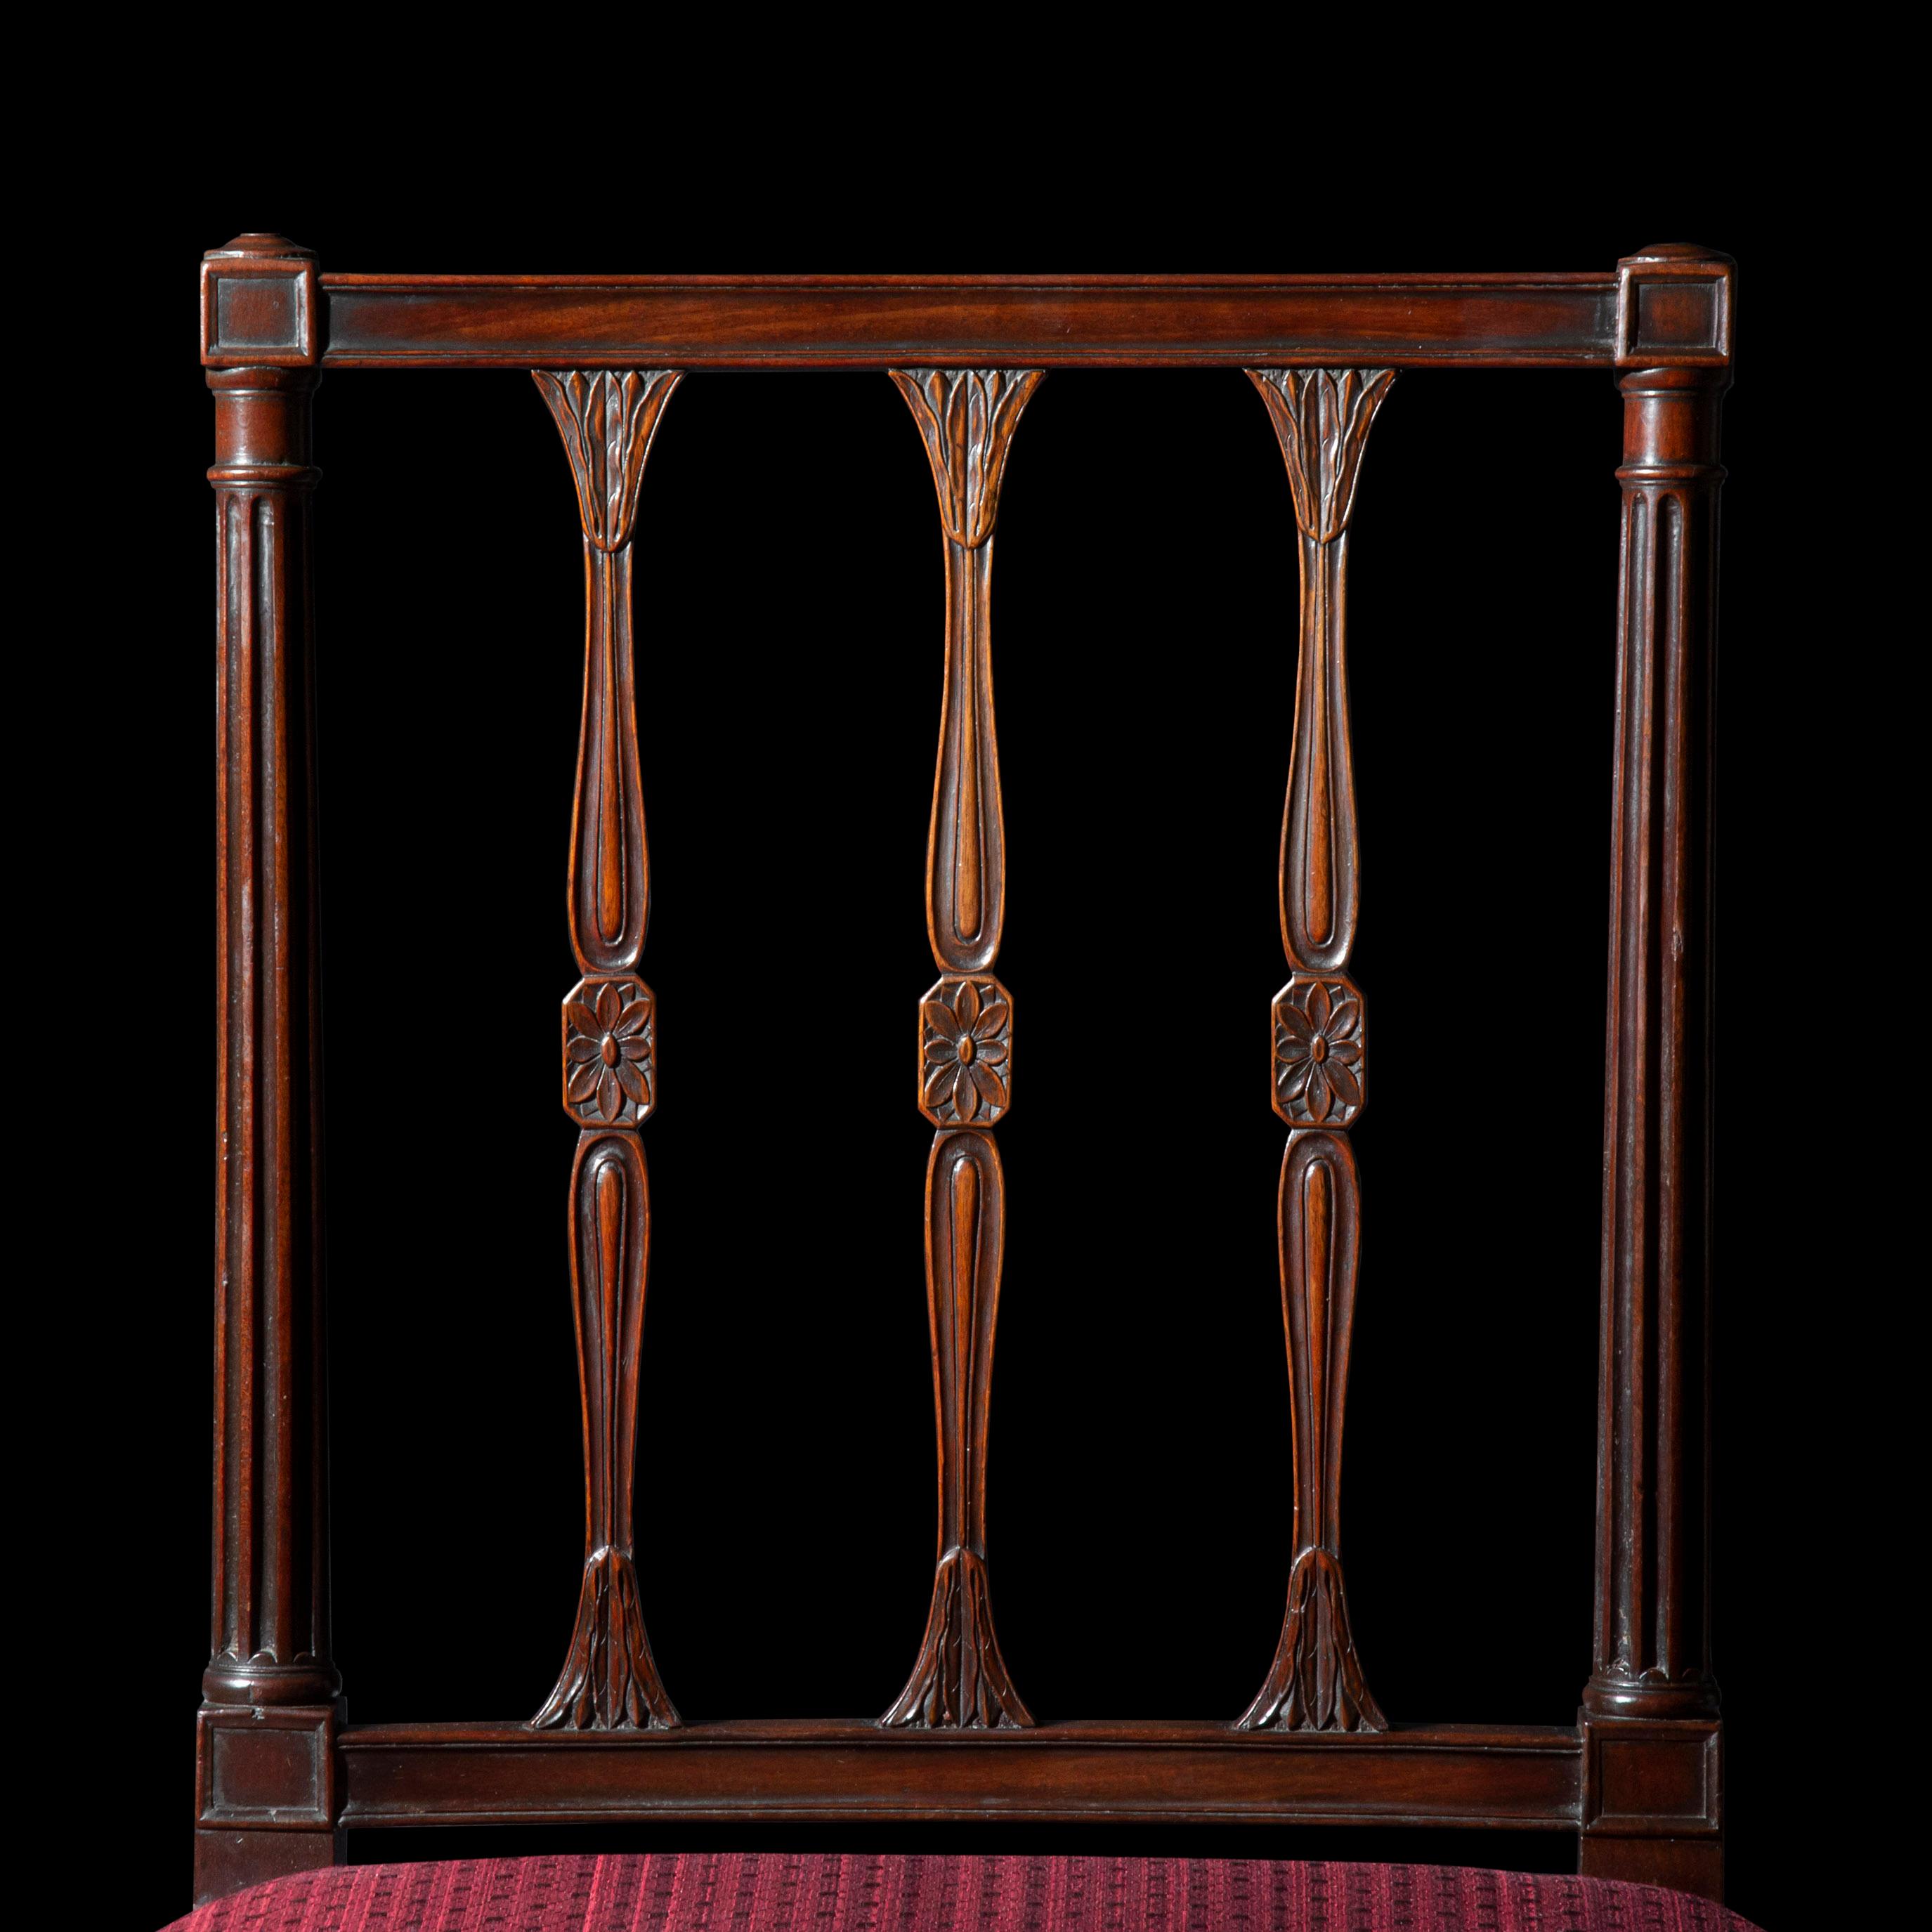 Ein äußerst eleganter Satz von sechs Mahagoni-Esszimmerstühlen aus der Zeit von George III. in hervorragender Qualität.  Ein Paar passender Sessel ist separat erhältlich.

Englisch, um 1780-1800

Warum wir sie mögen
Wunderbar elegantes Modell, das